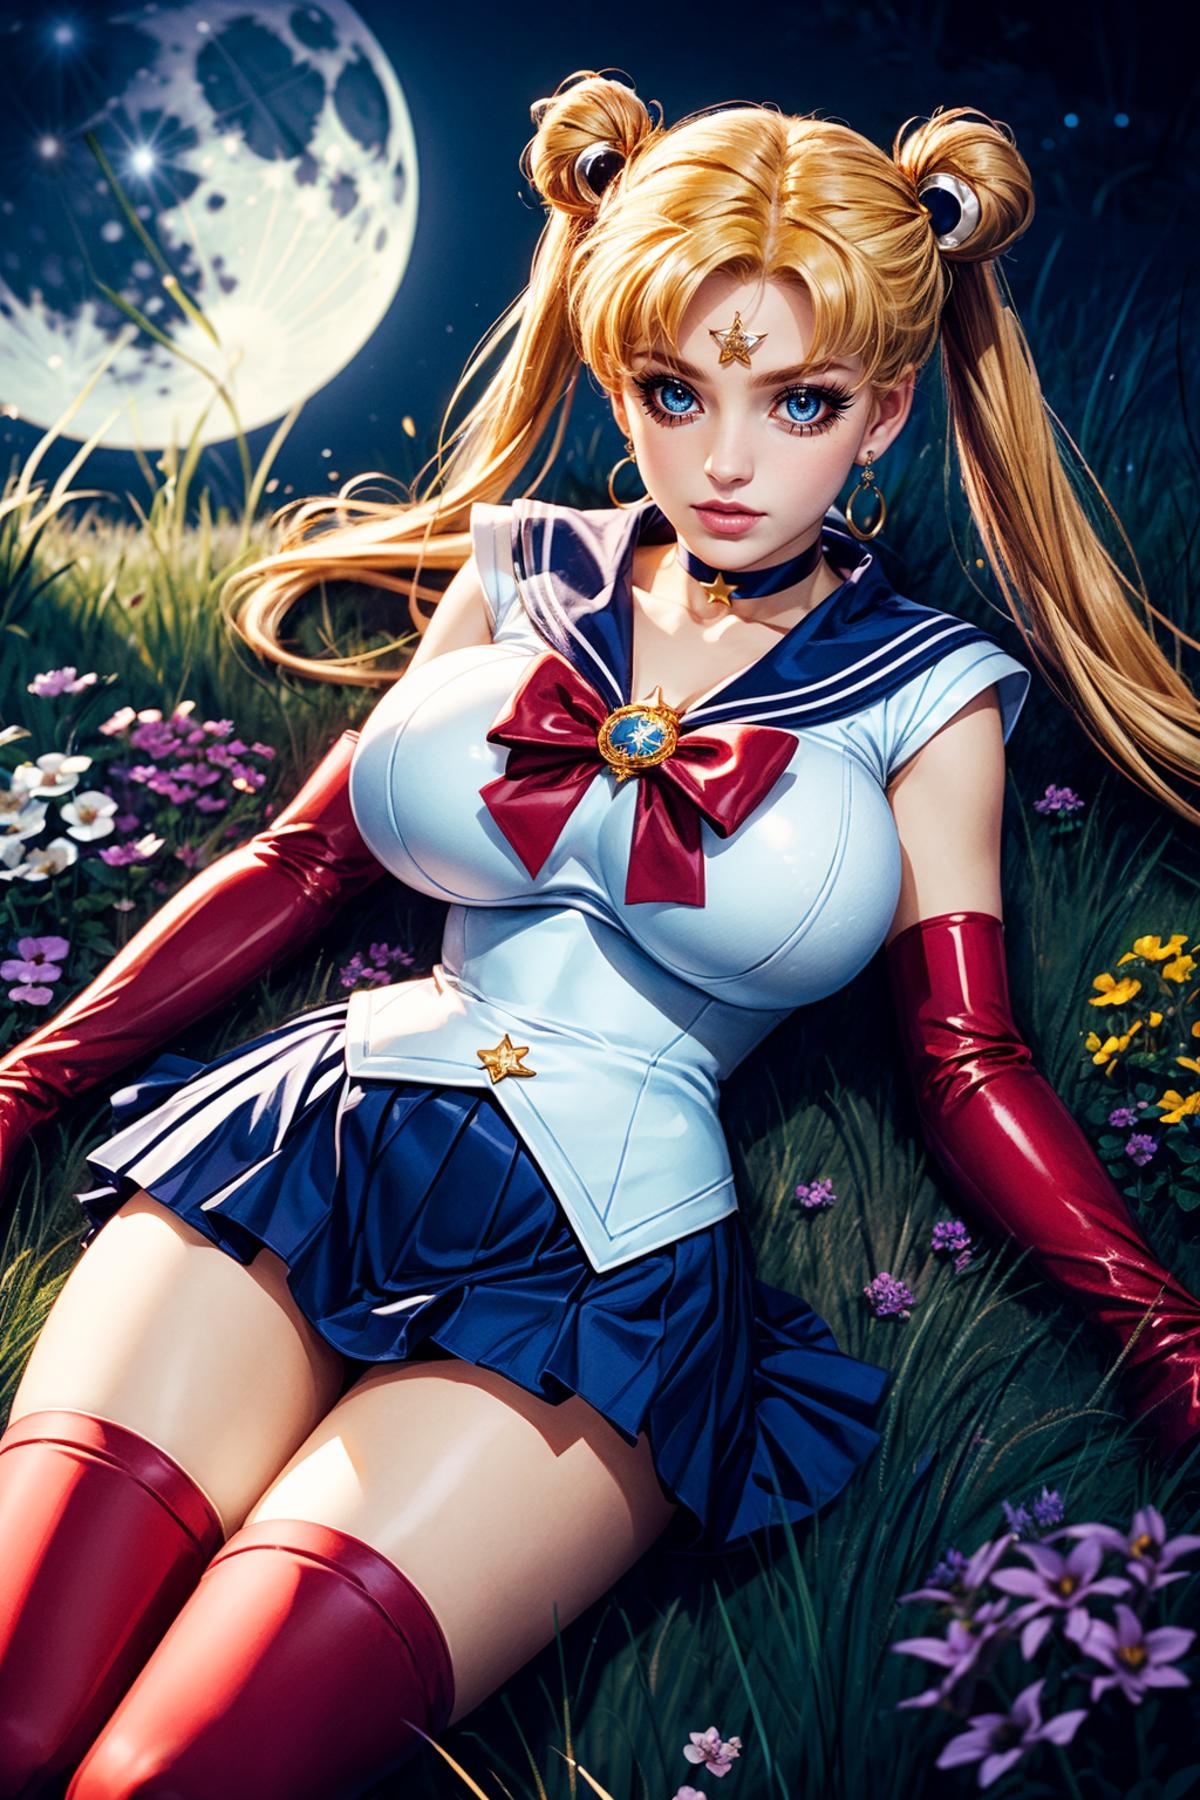 Sailor Moon / Usagi Tsukino (Sailor Moon) - Lora image by iJWiTGS8